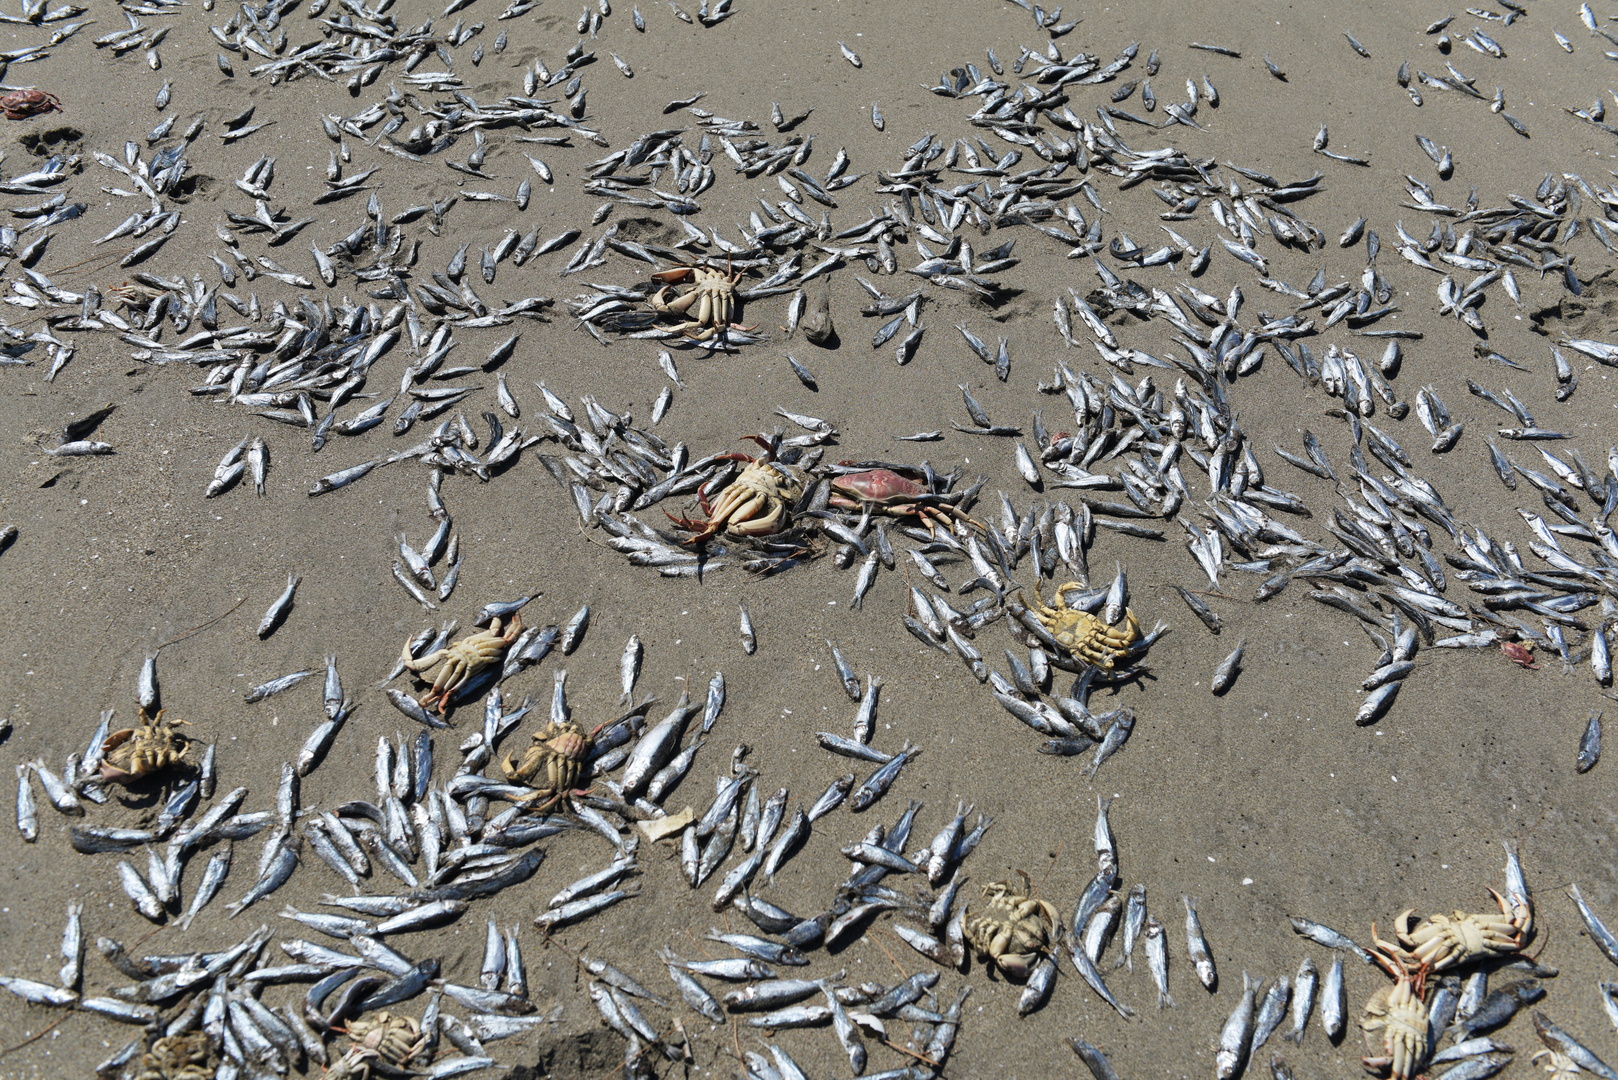 نفوق مئات الأطنان من الأسماك على شواطئ تشيلي (صور)